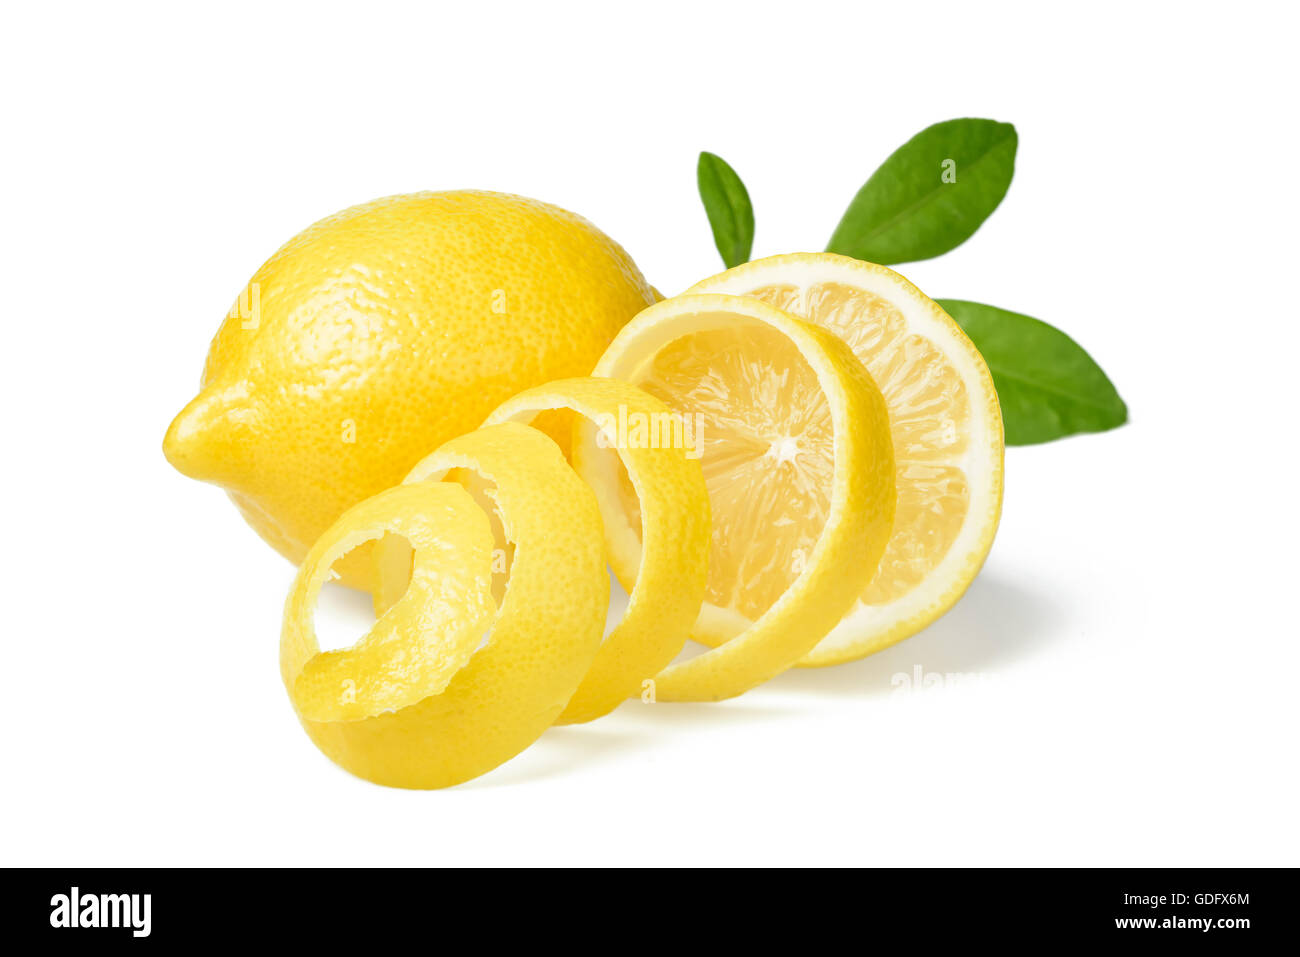 Le zeste de citron et citron frais on white Banque D'Images